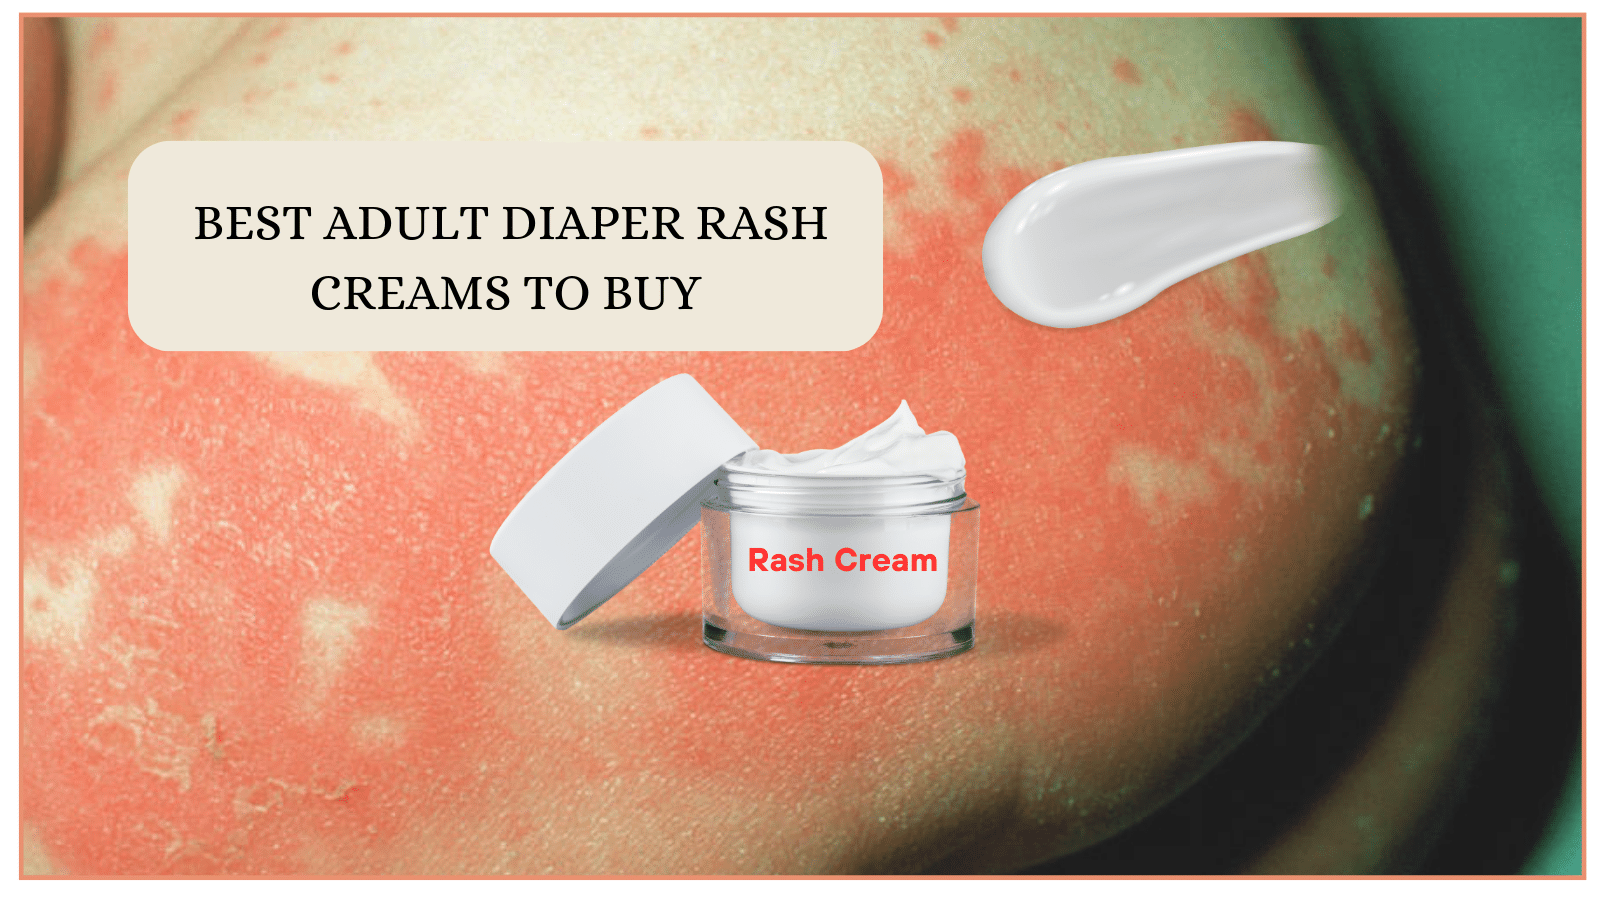 Best Adult Diaper Rash Creams to Buy